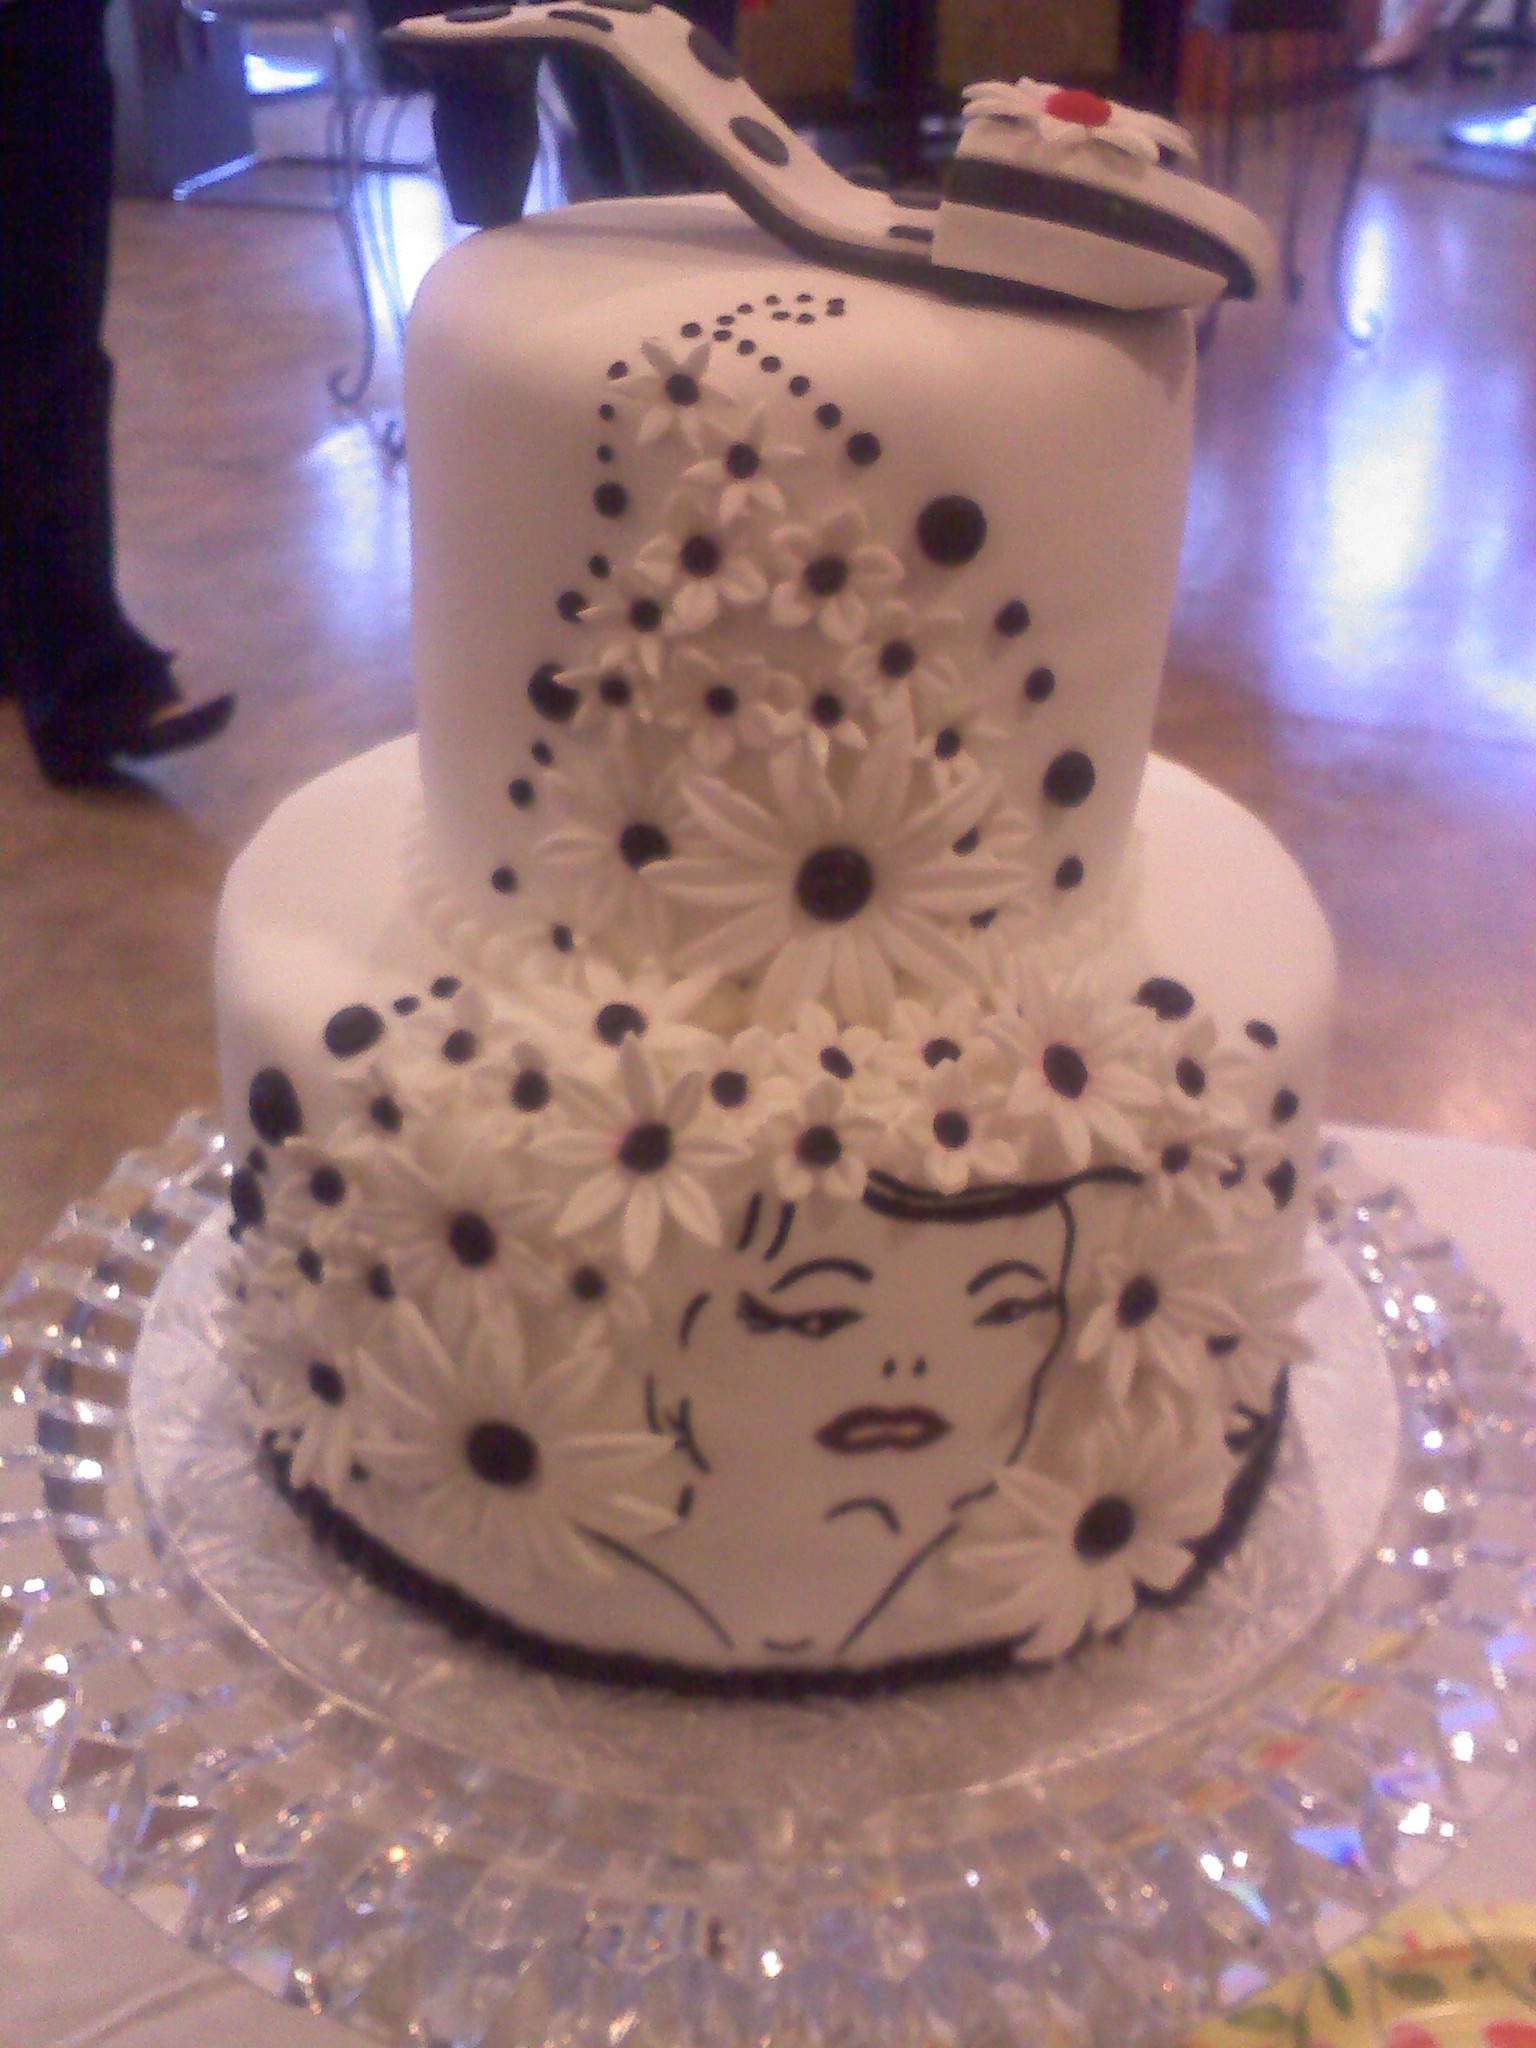 amazing wedding cakes